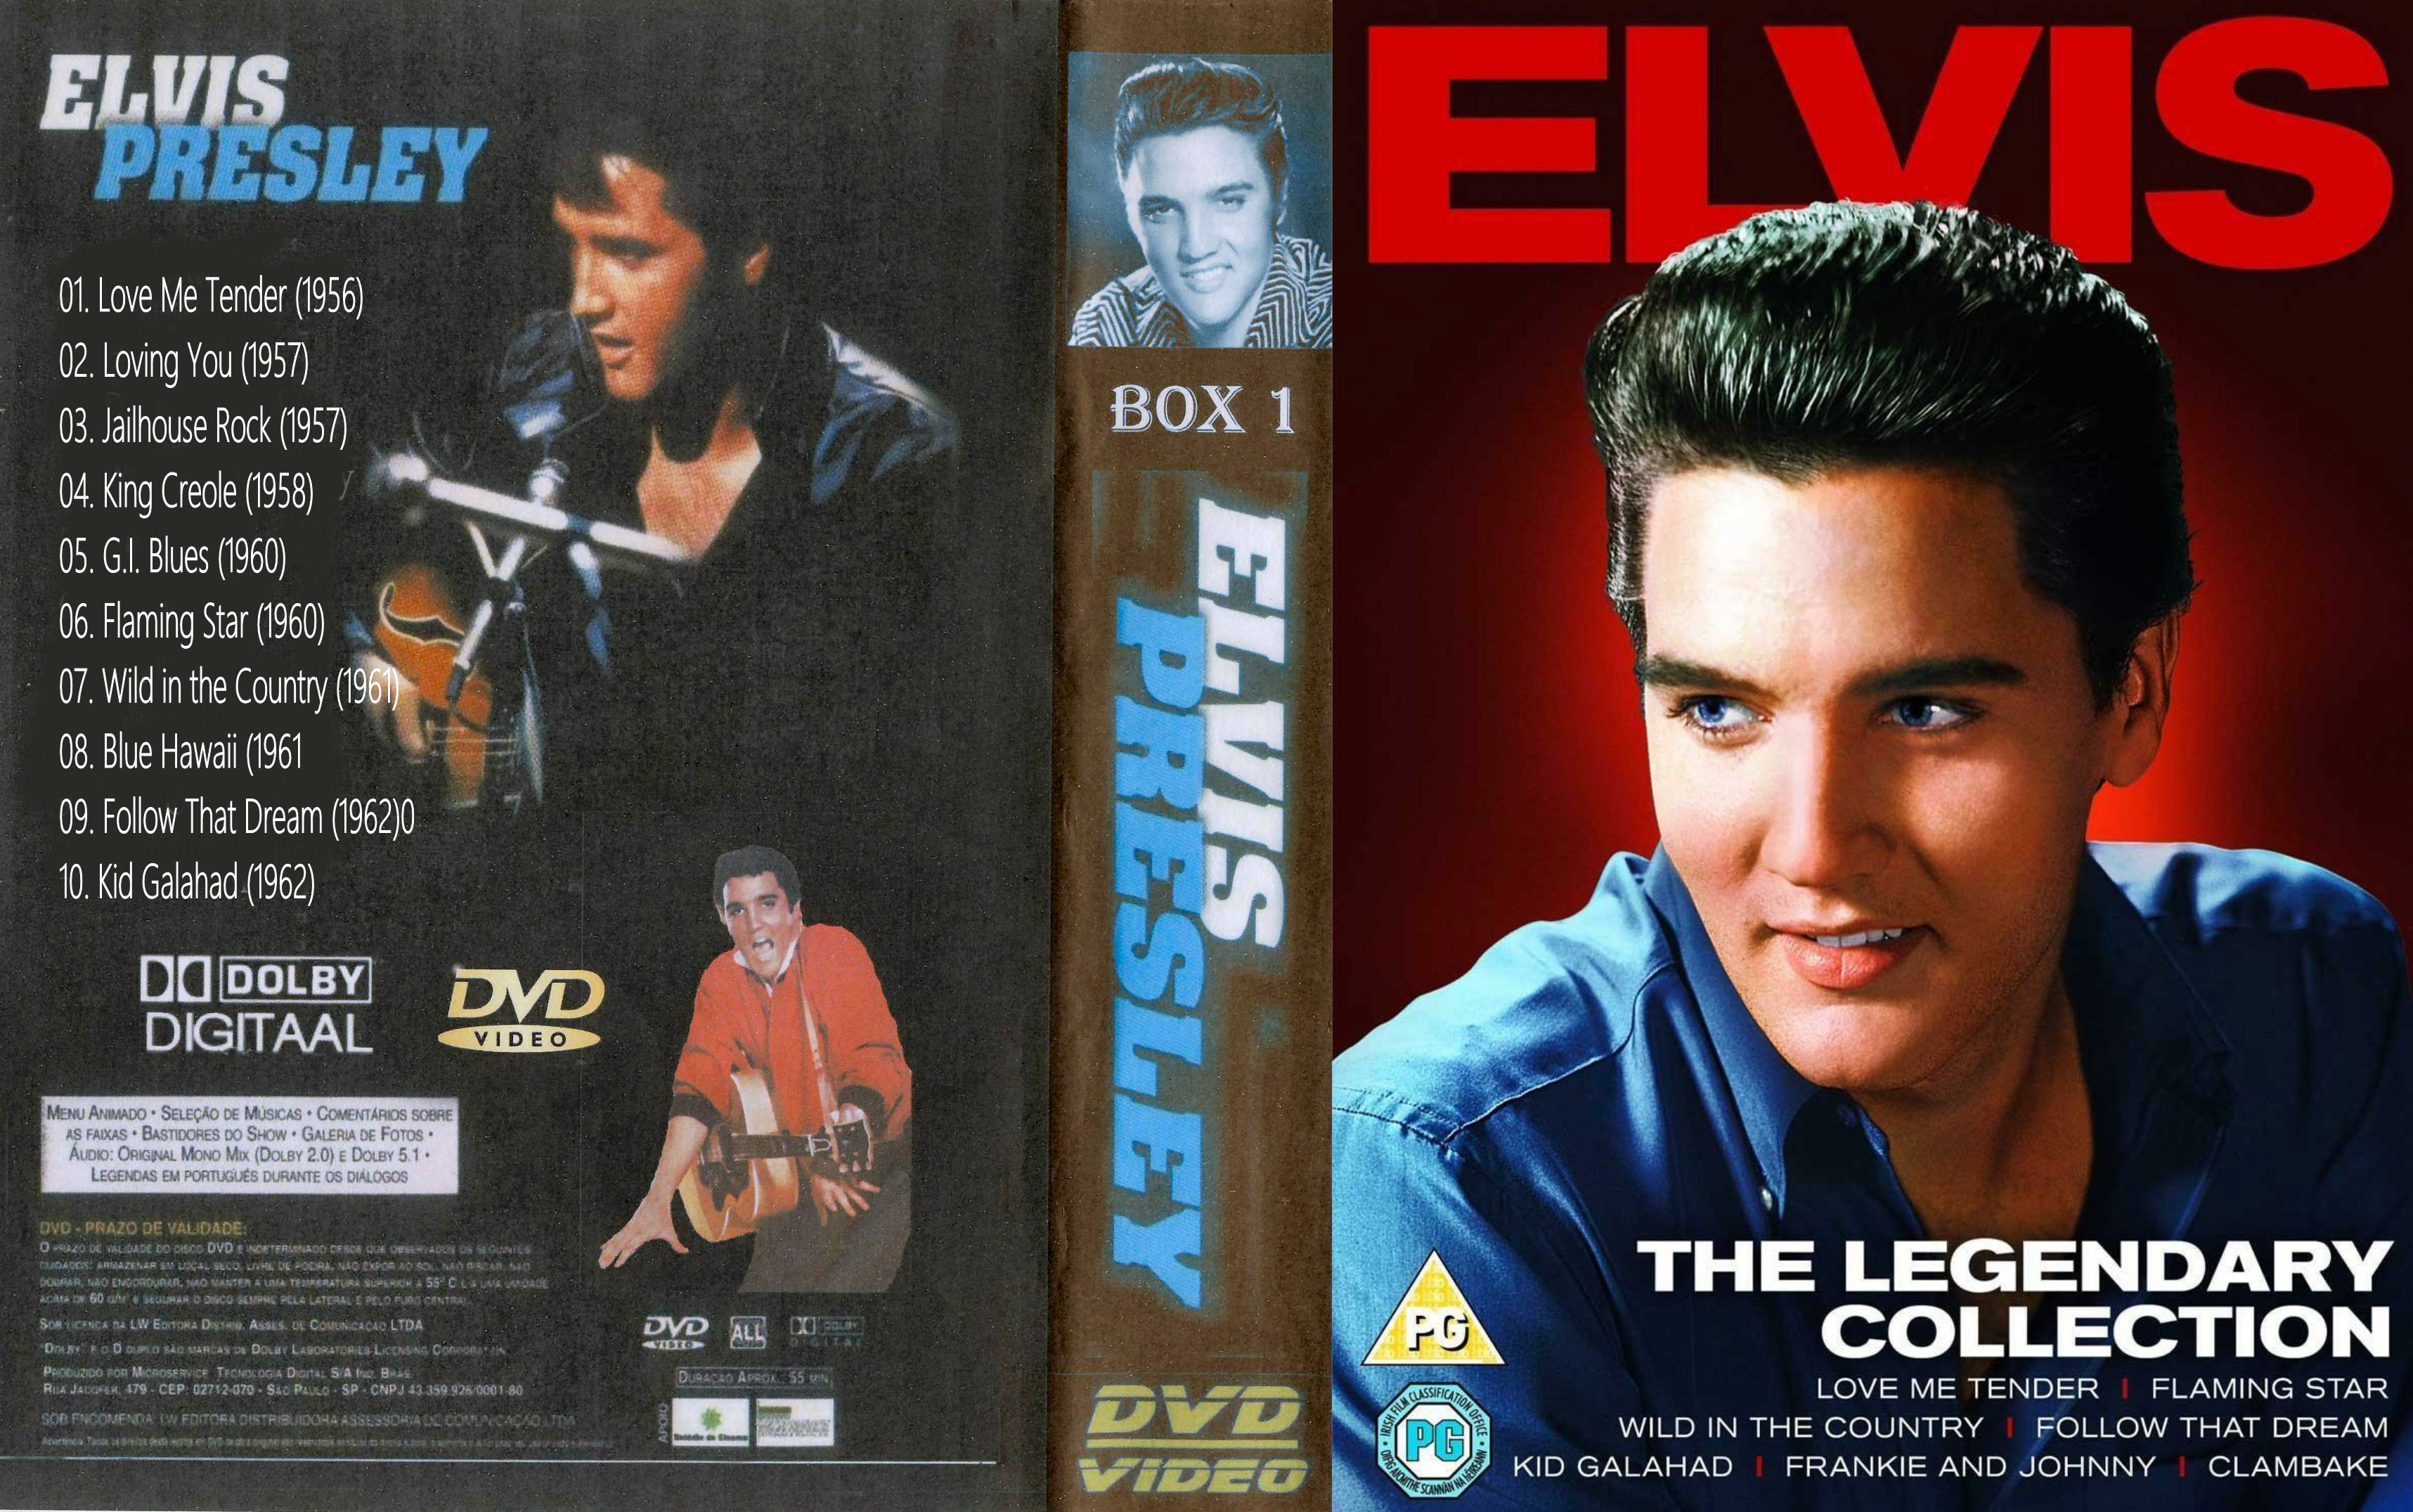 REPOST Elvis Presley Collectie ( 07 - Wild in the Country ) DvD 7 van 31